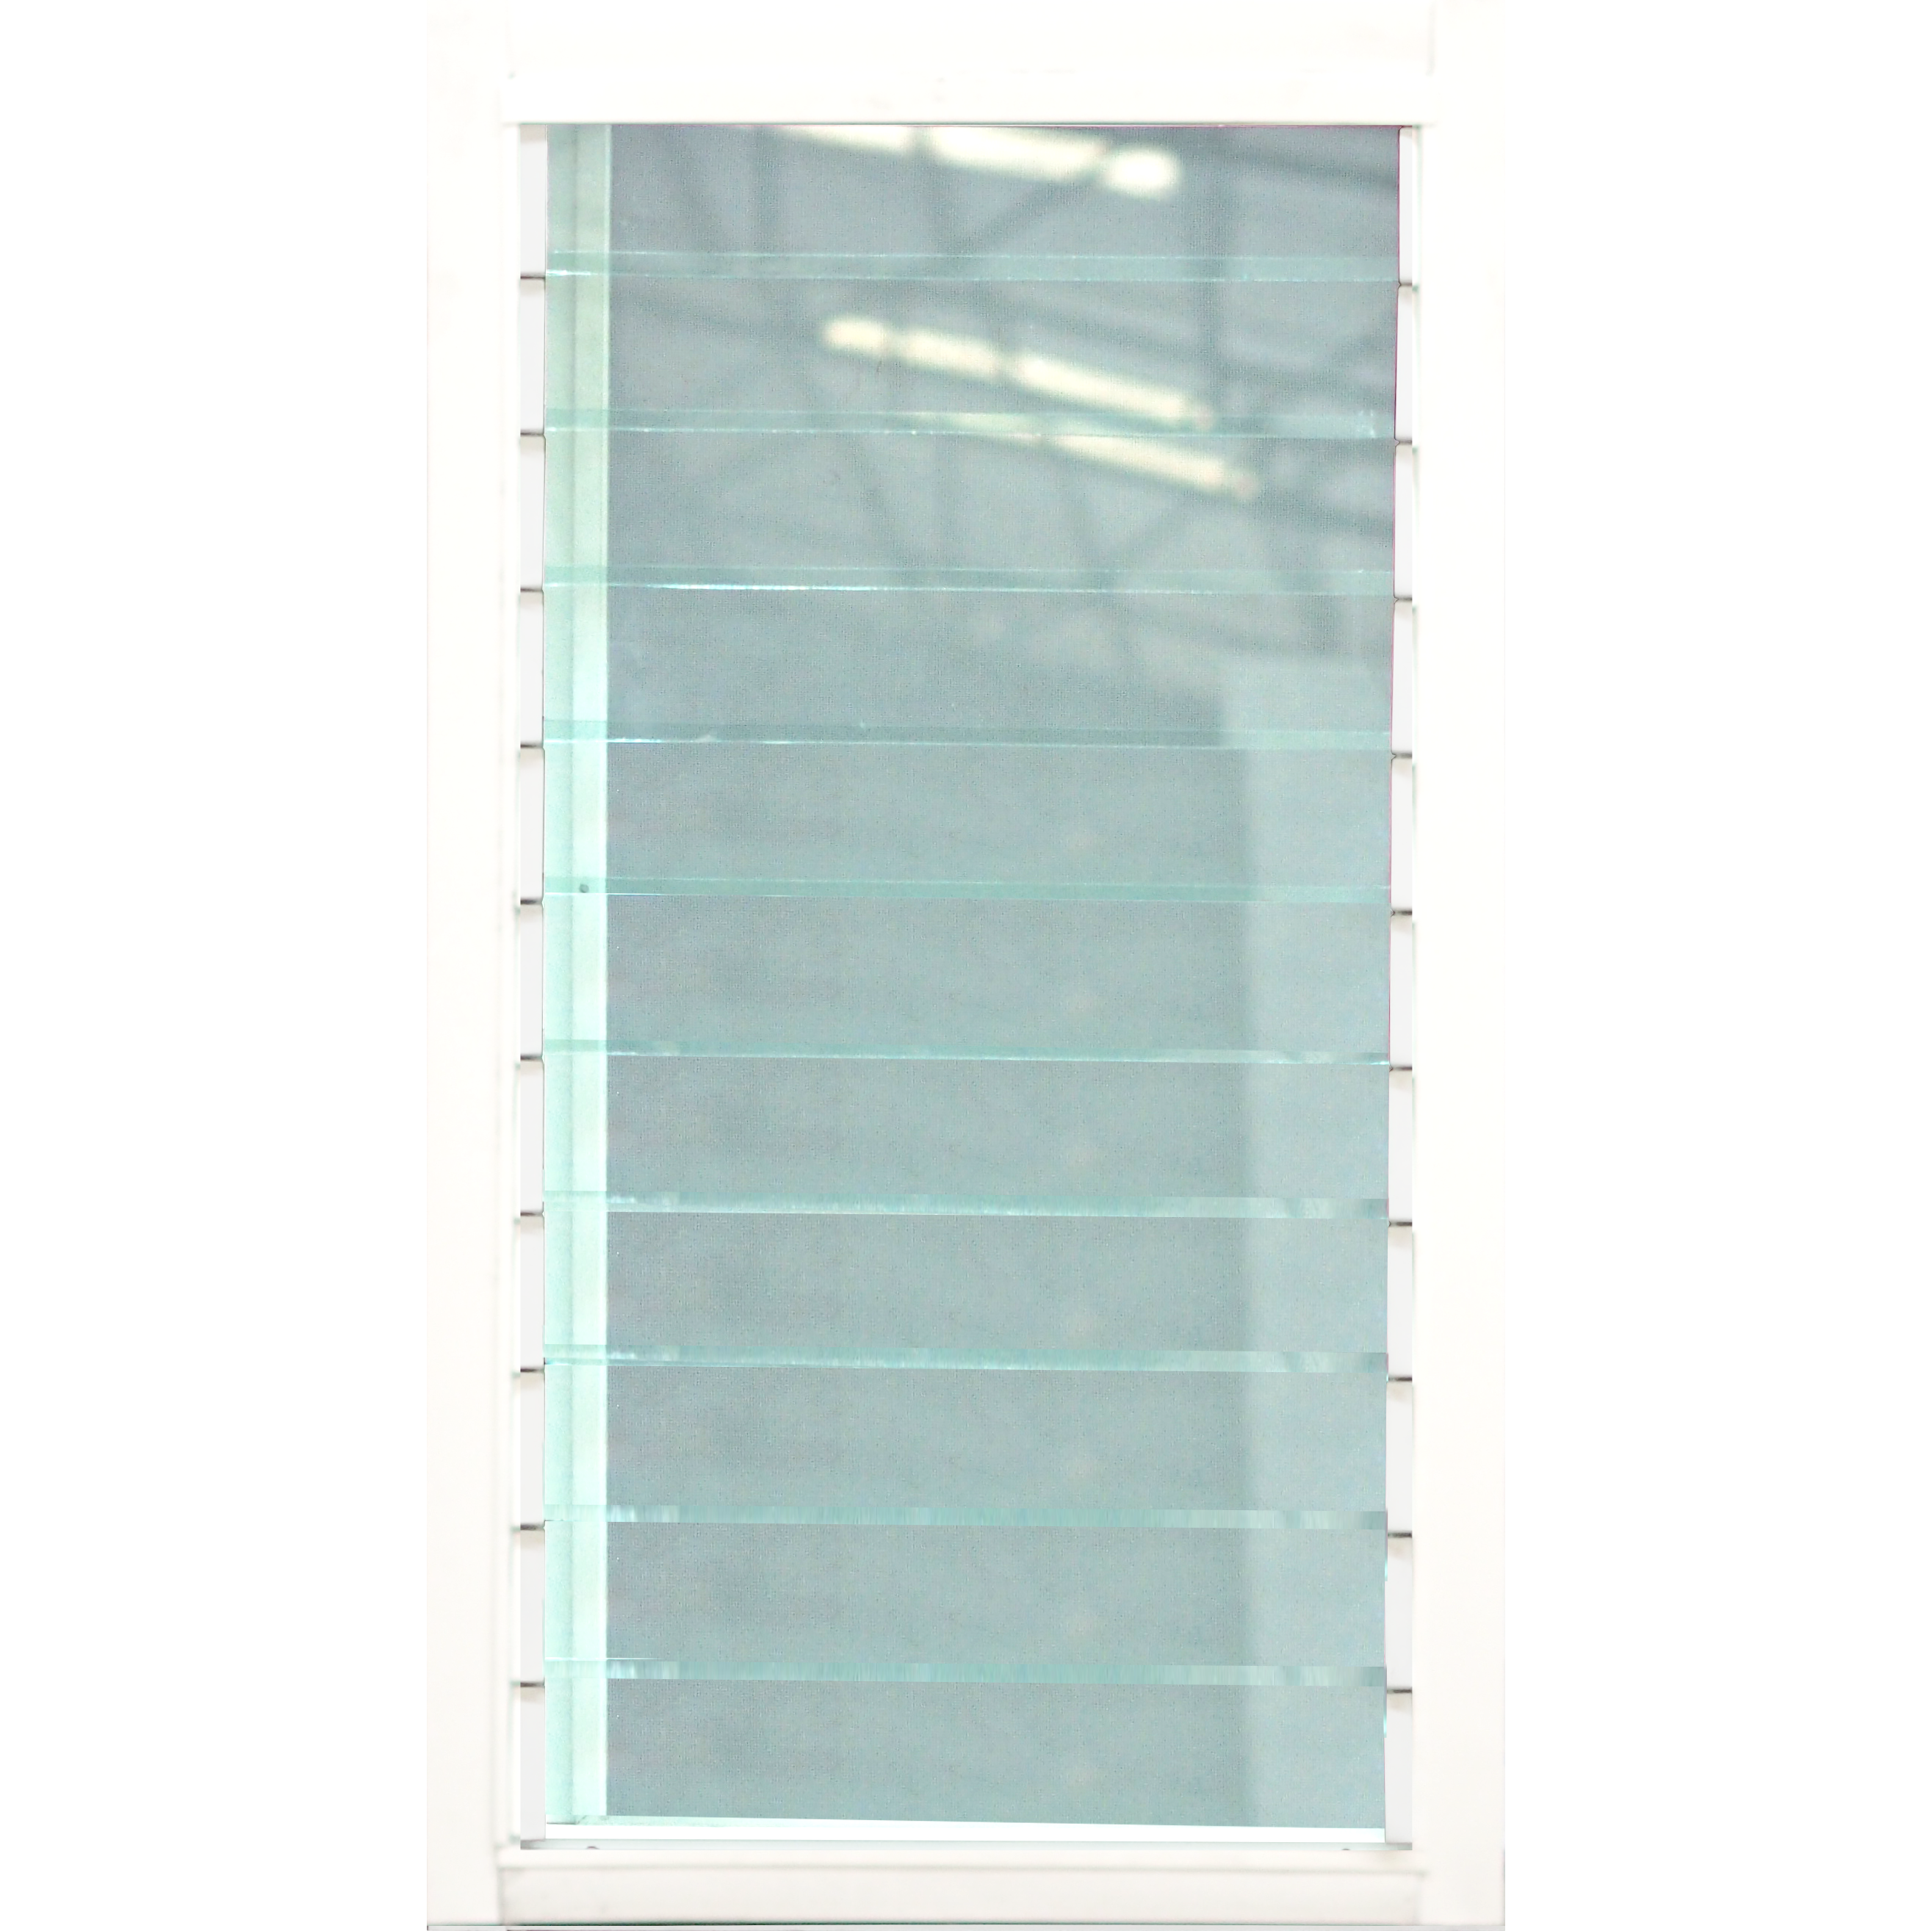 หน้าต่างบานเกล็ด 1ช่อง อลูมิเนียมสีอบขาว+กระจกใสเขียว+มุ้ง 60ซม.*110ซม.